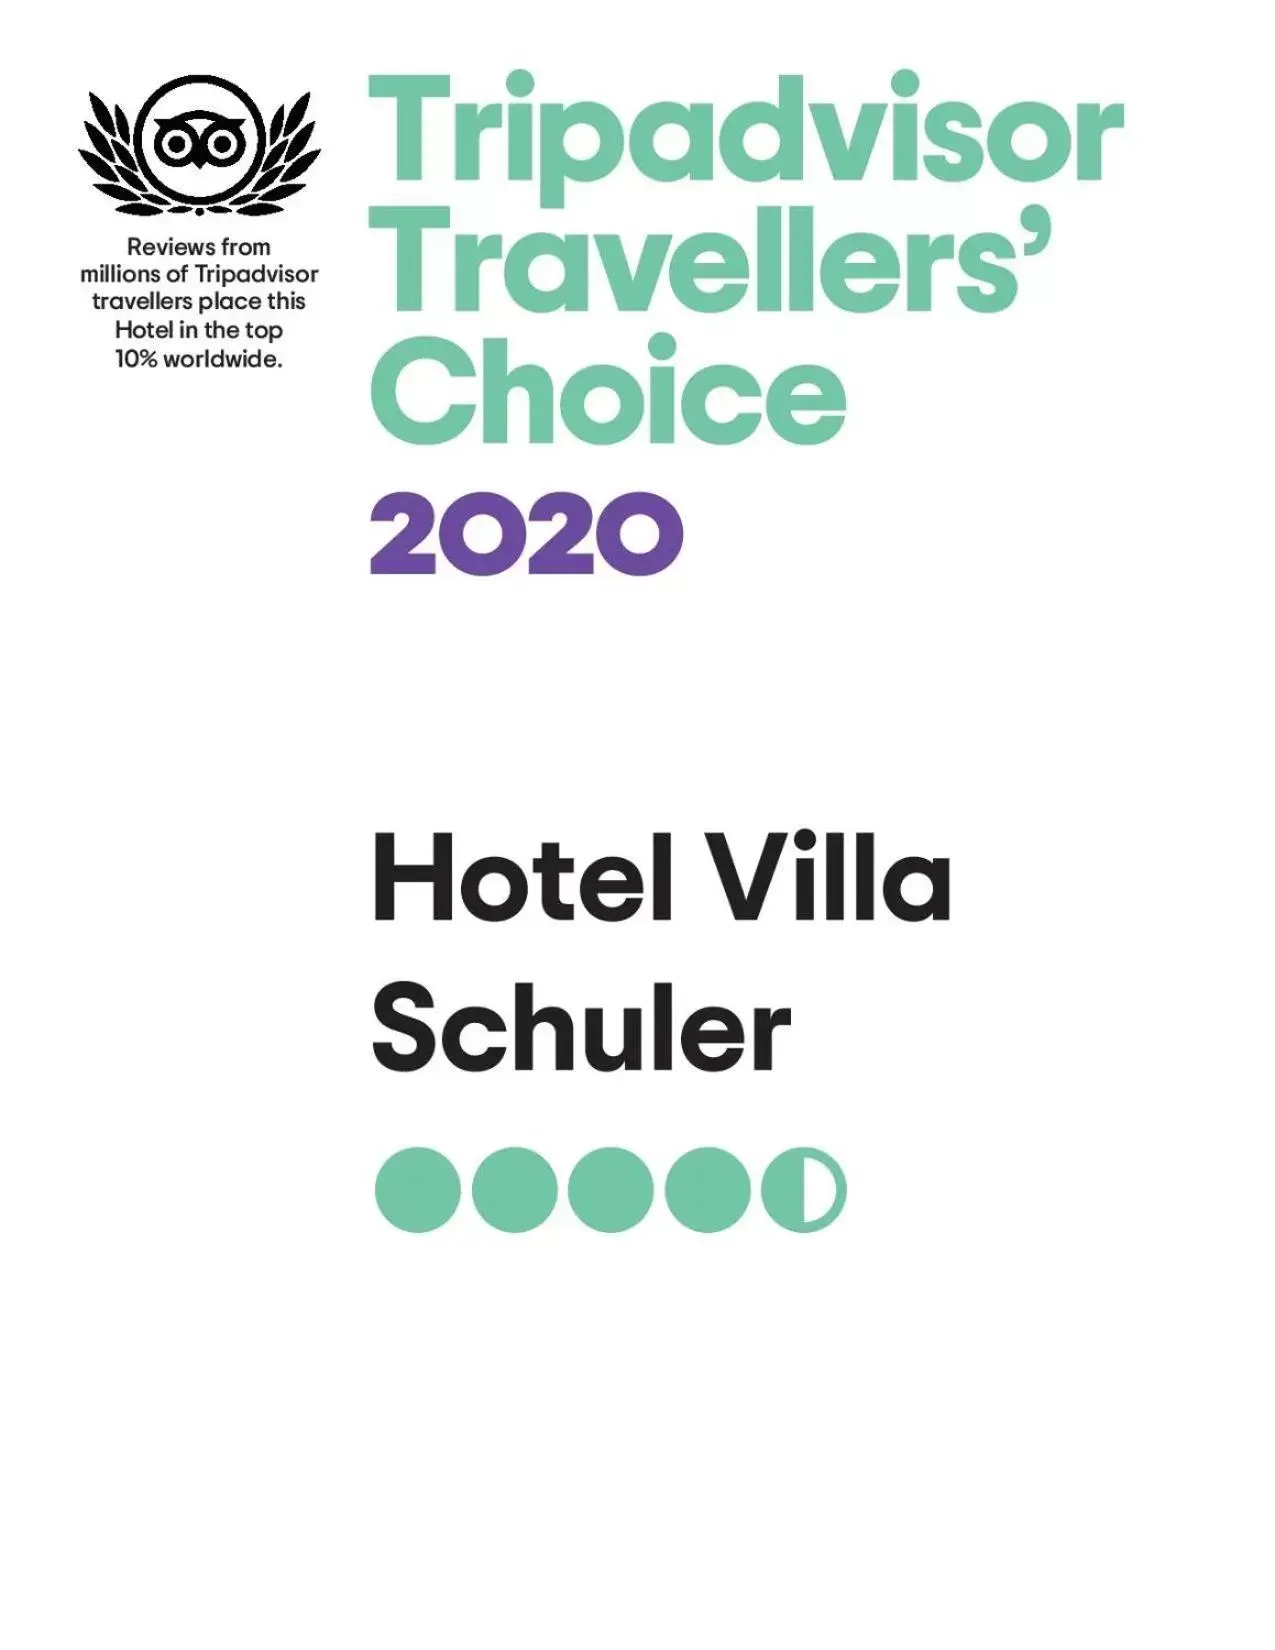 Certificate/Award in Hotel Villa Schuler